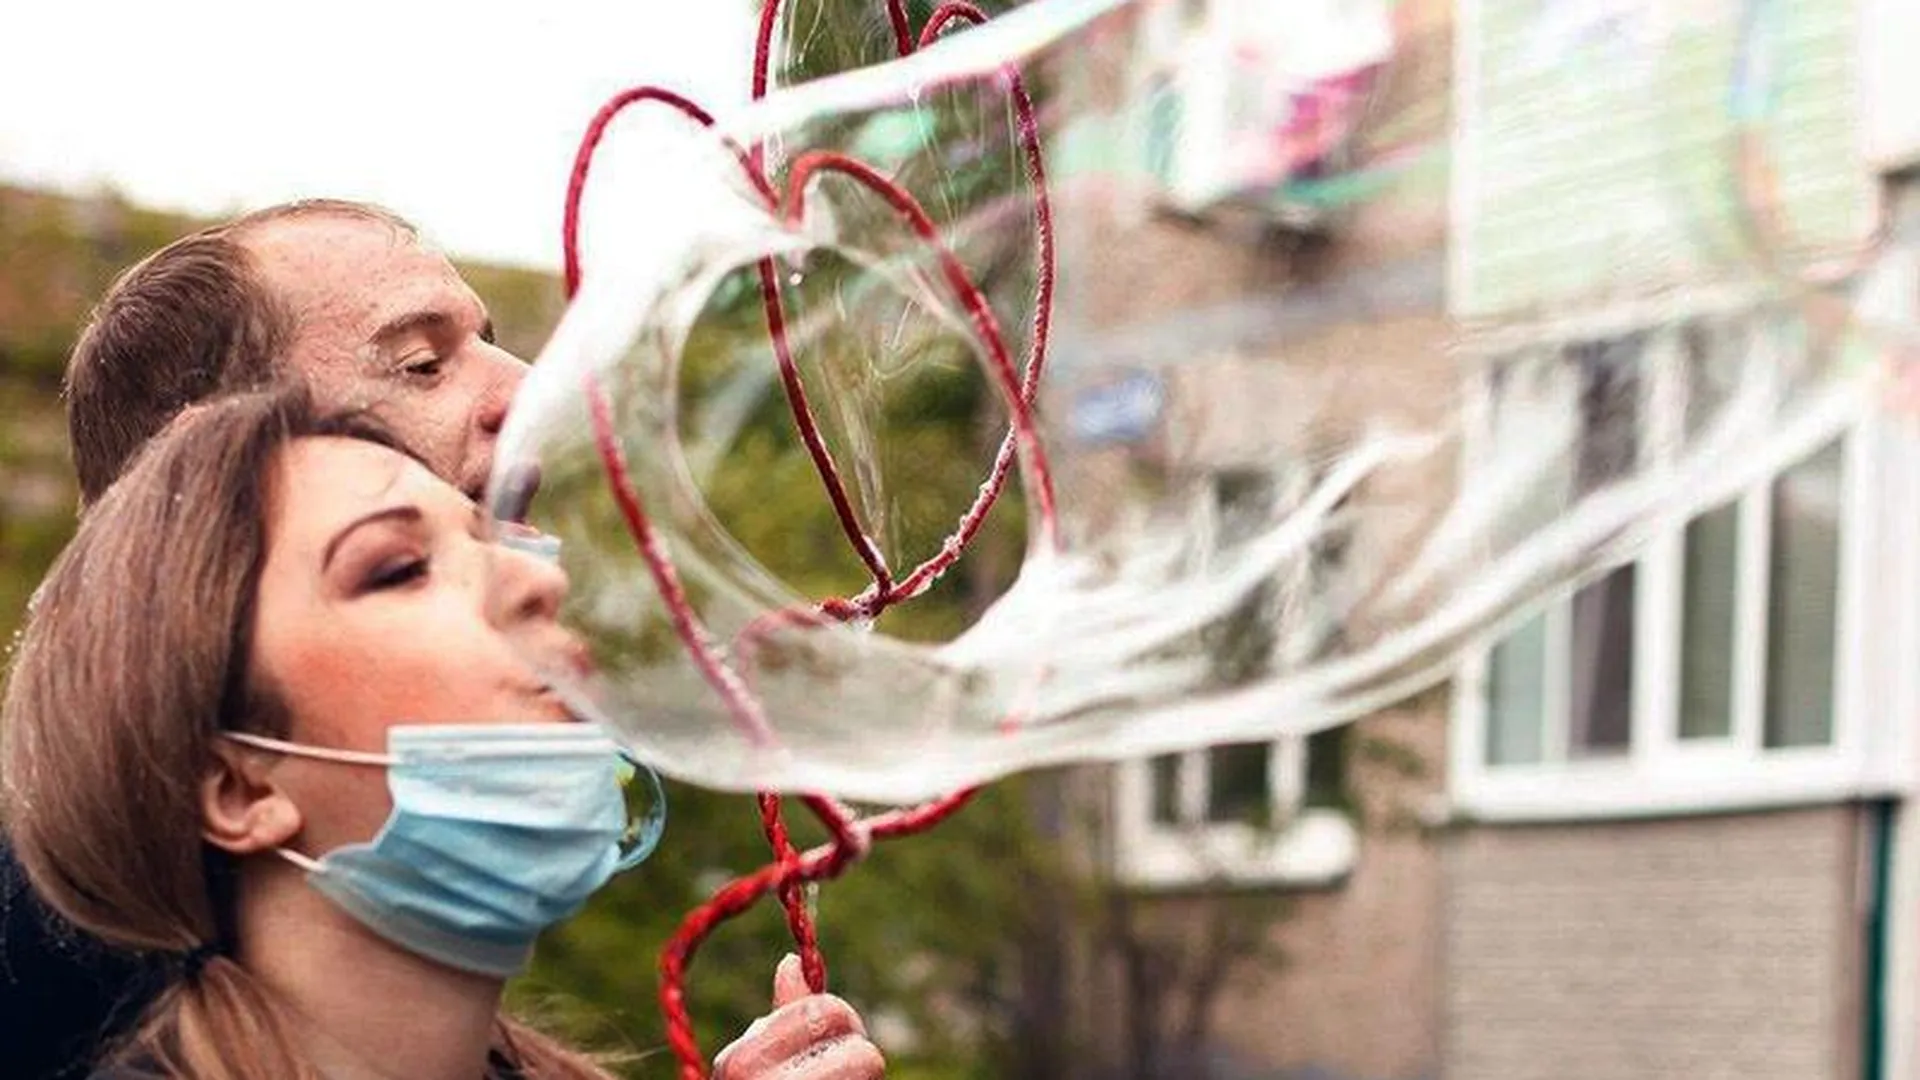 Бесплатные шоу мыльных пузырей во дворах устраивают волонтеры из Воскресенска